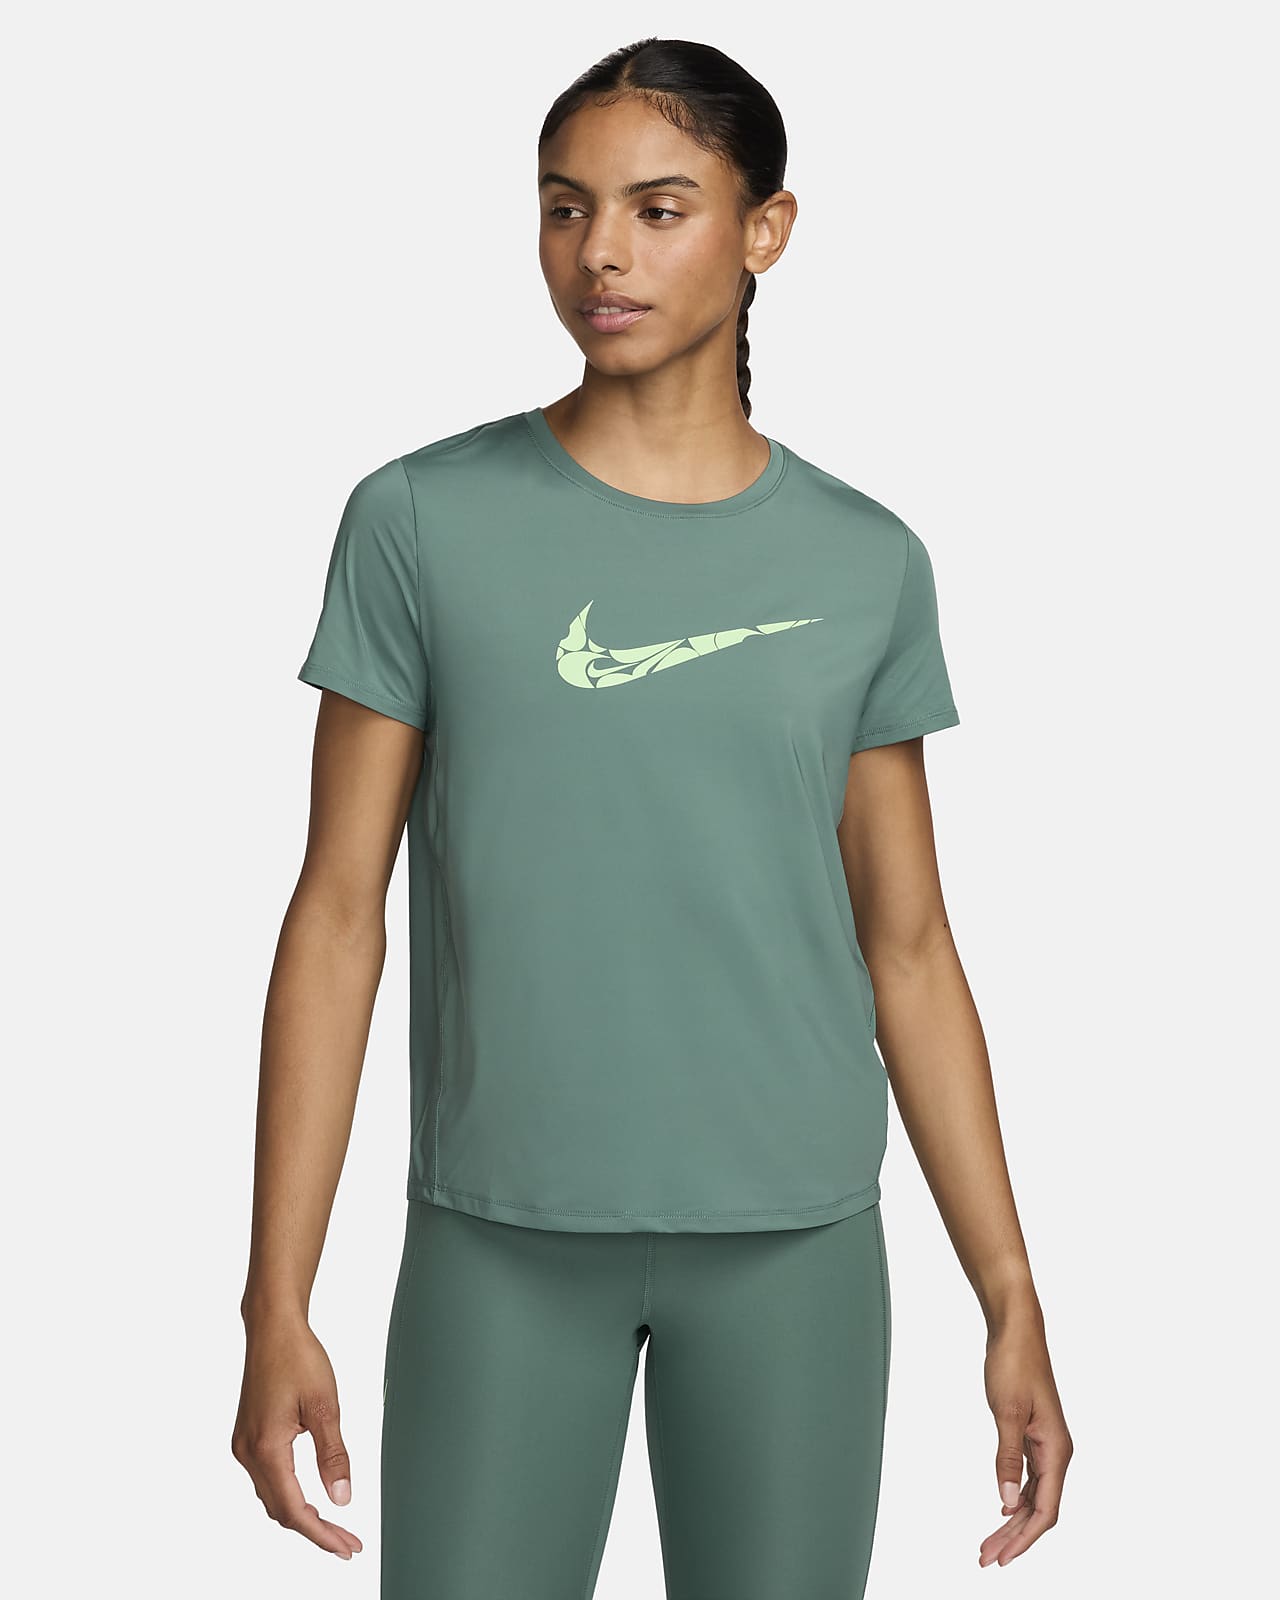 Nike One Swoosh Dri-FIT rövid ujjú női futófelső